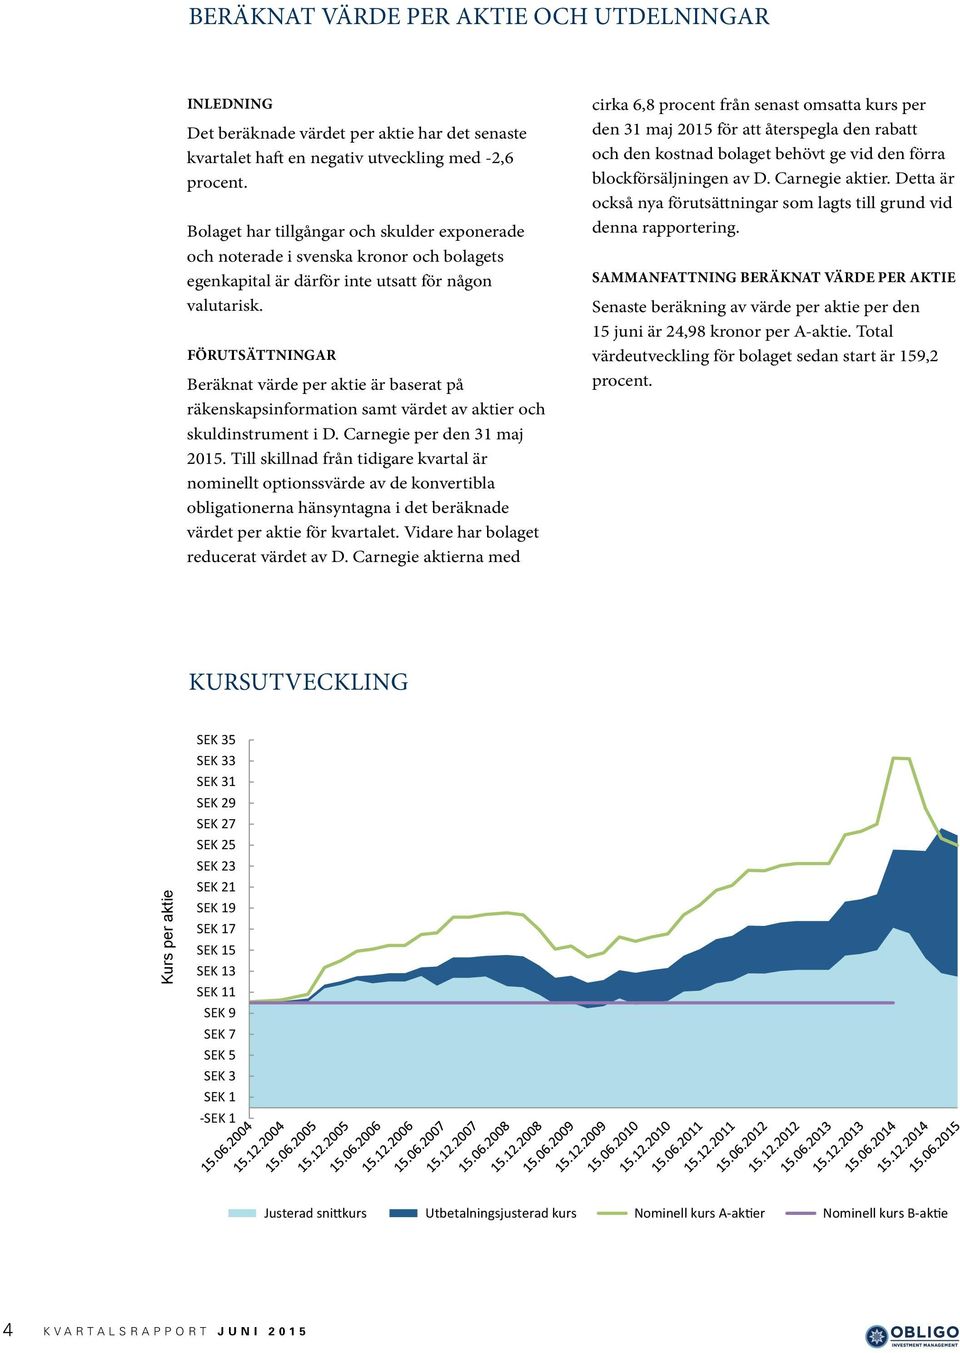 FÖRUTSÄTTNINGAR Beräknat värde per aktie är baserat på räkenskapsinformation samt värdet av aktier och skuldinstrument i D. Carnegie per den 31 maj 2015.